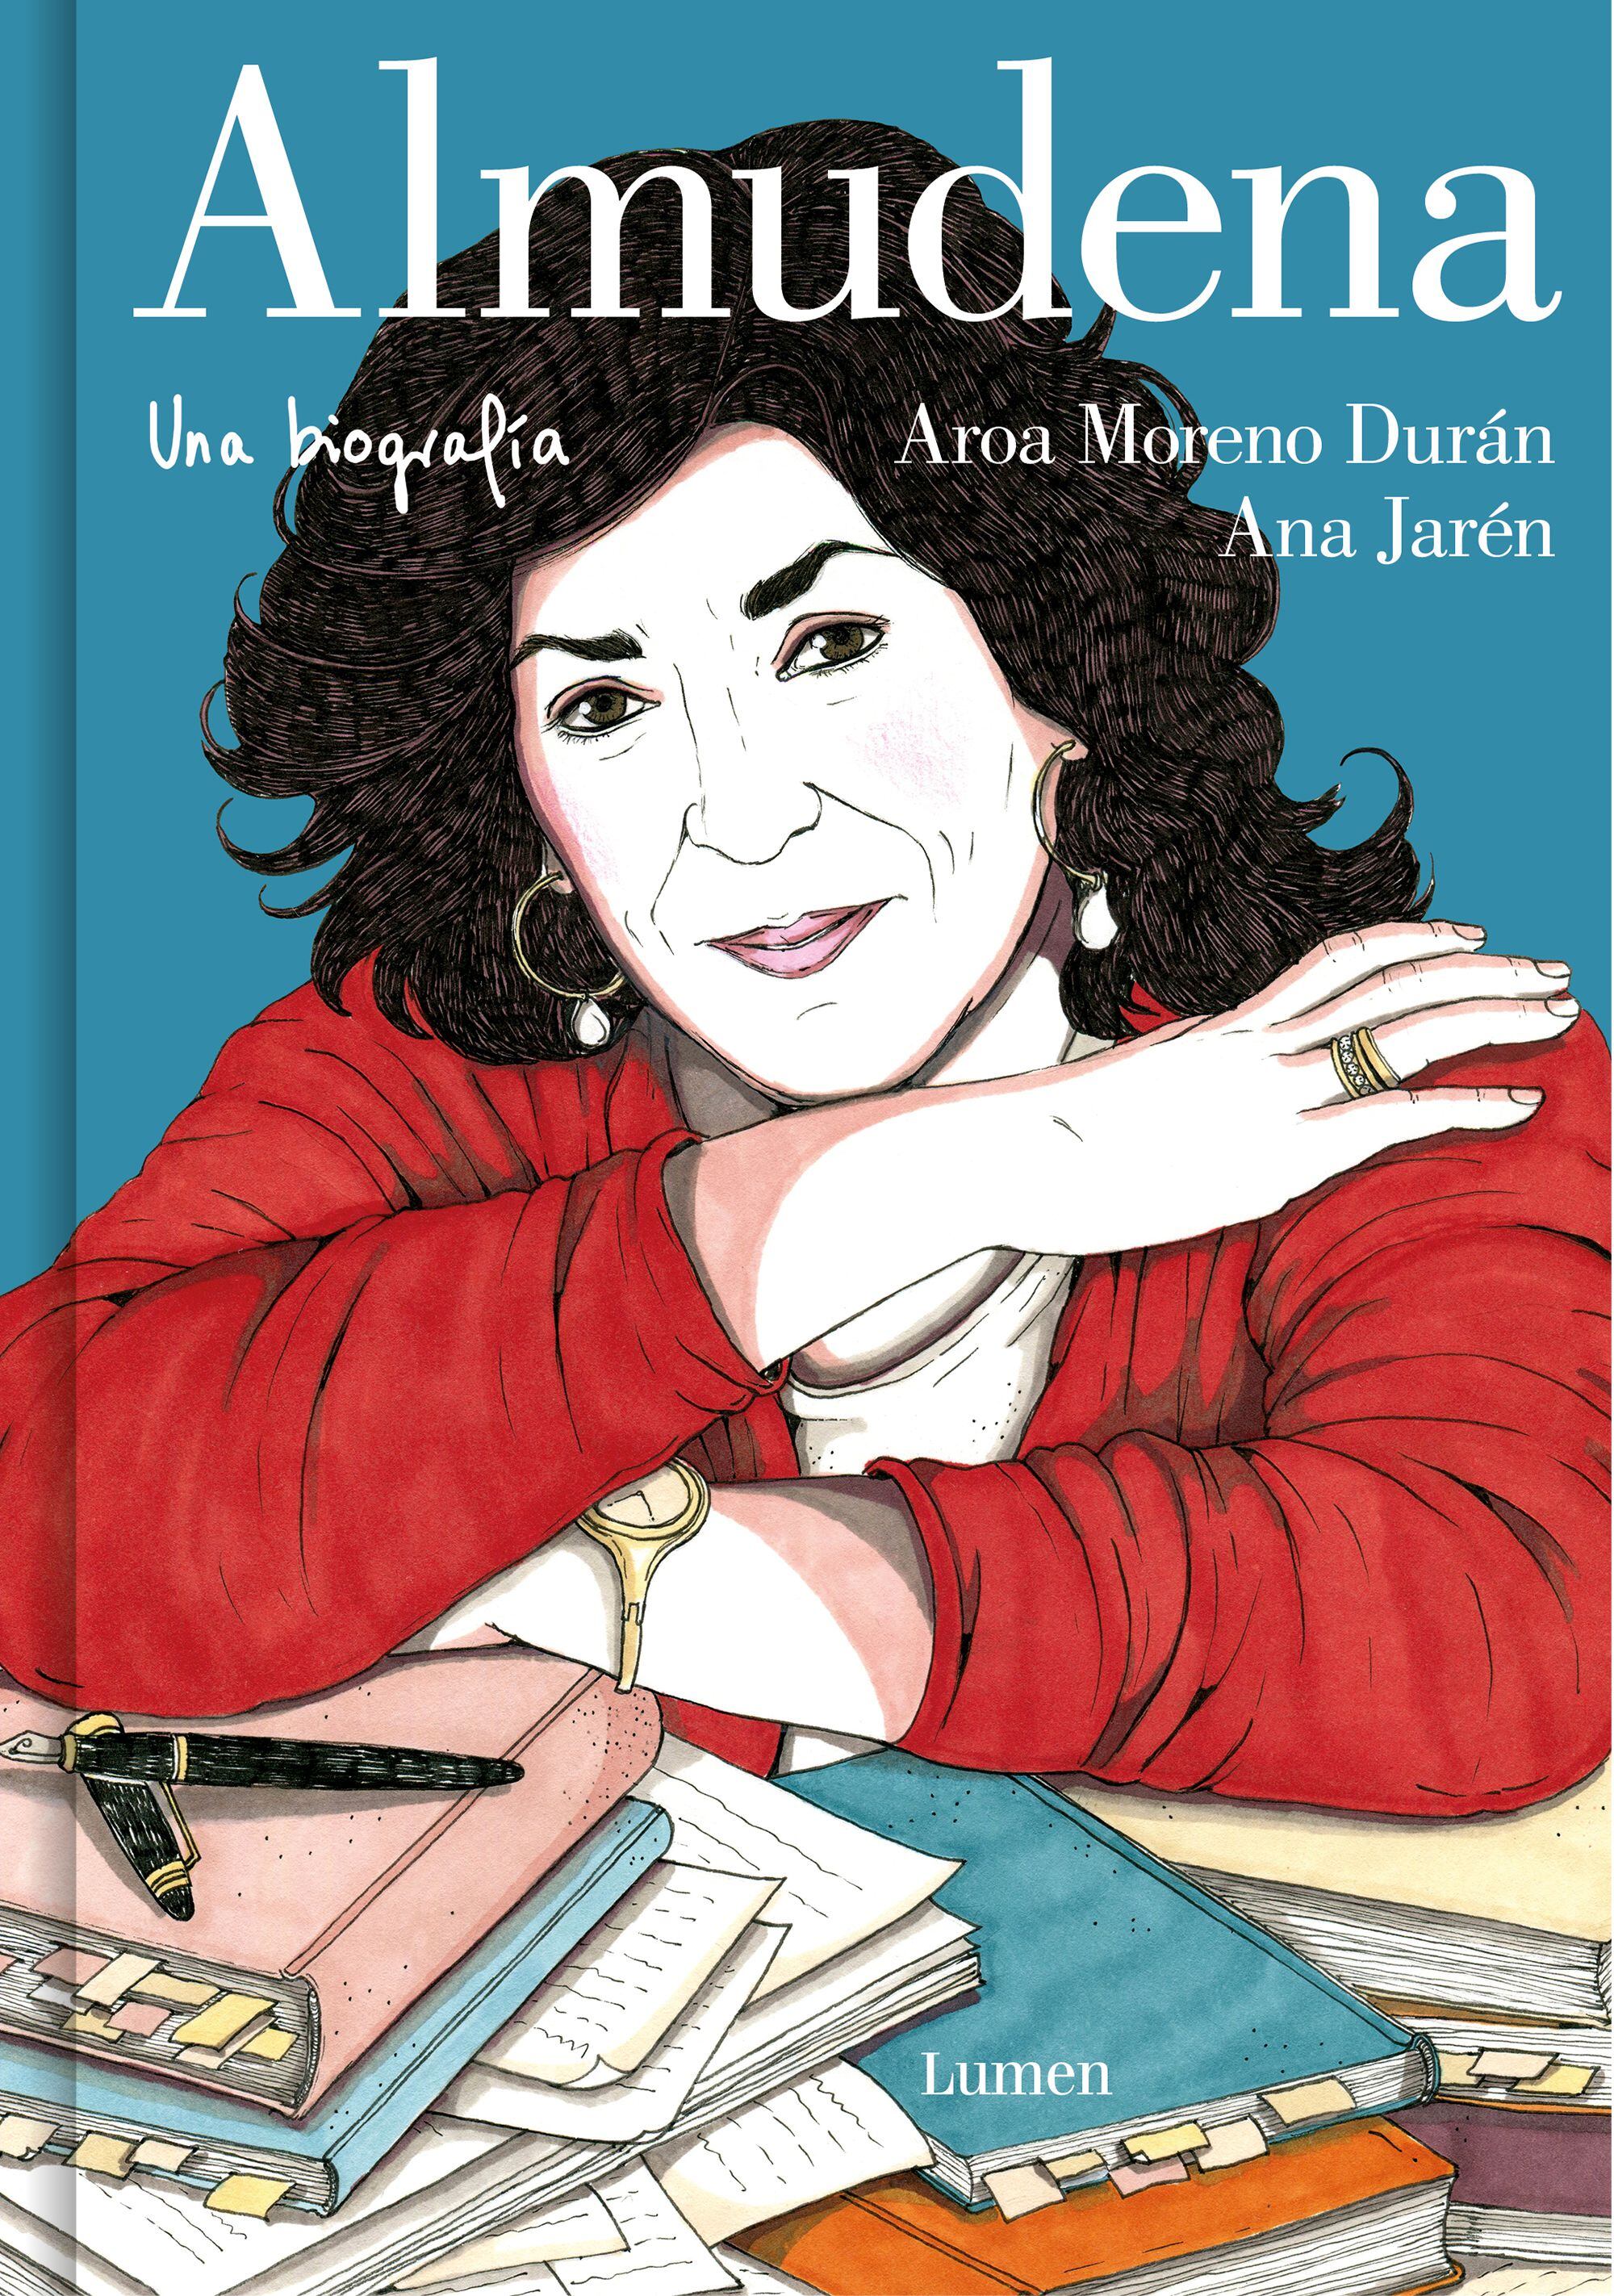 Portada del libro 'Almudena. Una biografía' (Lumen), de Aroa Moreno y Ana Jarén.